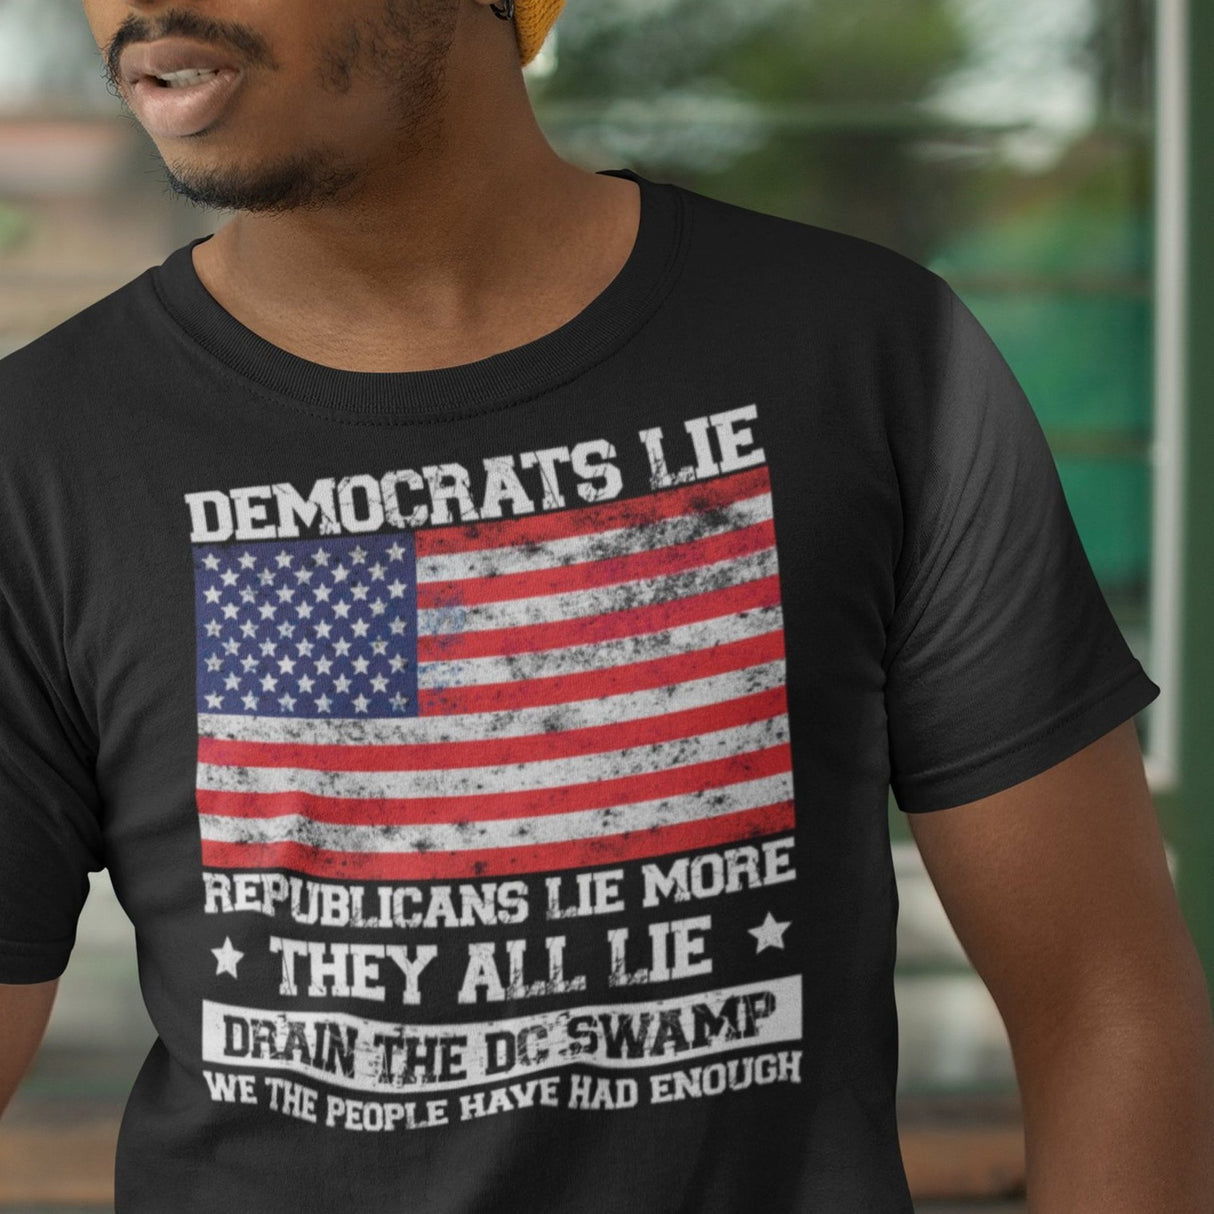 democrats-lie-republicans-lie-more-vote-for-change-vote-for-truth-change-tee-lie-t-shirt-democrat-tee-t-shirt-tee#color_black